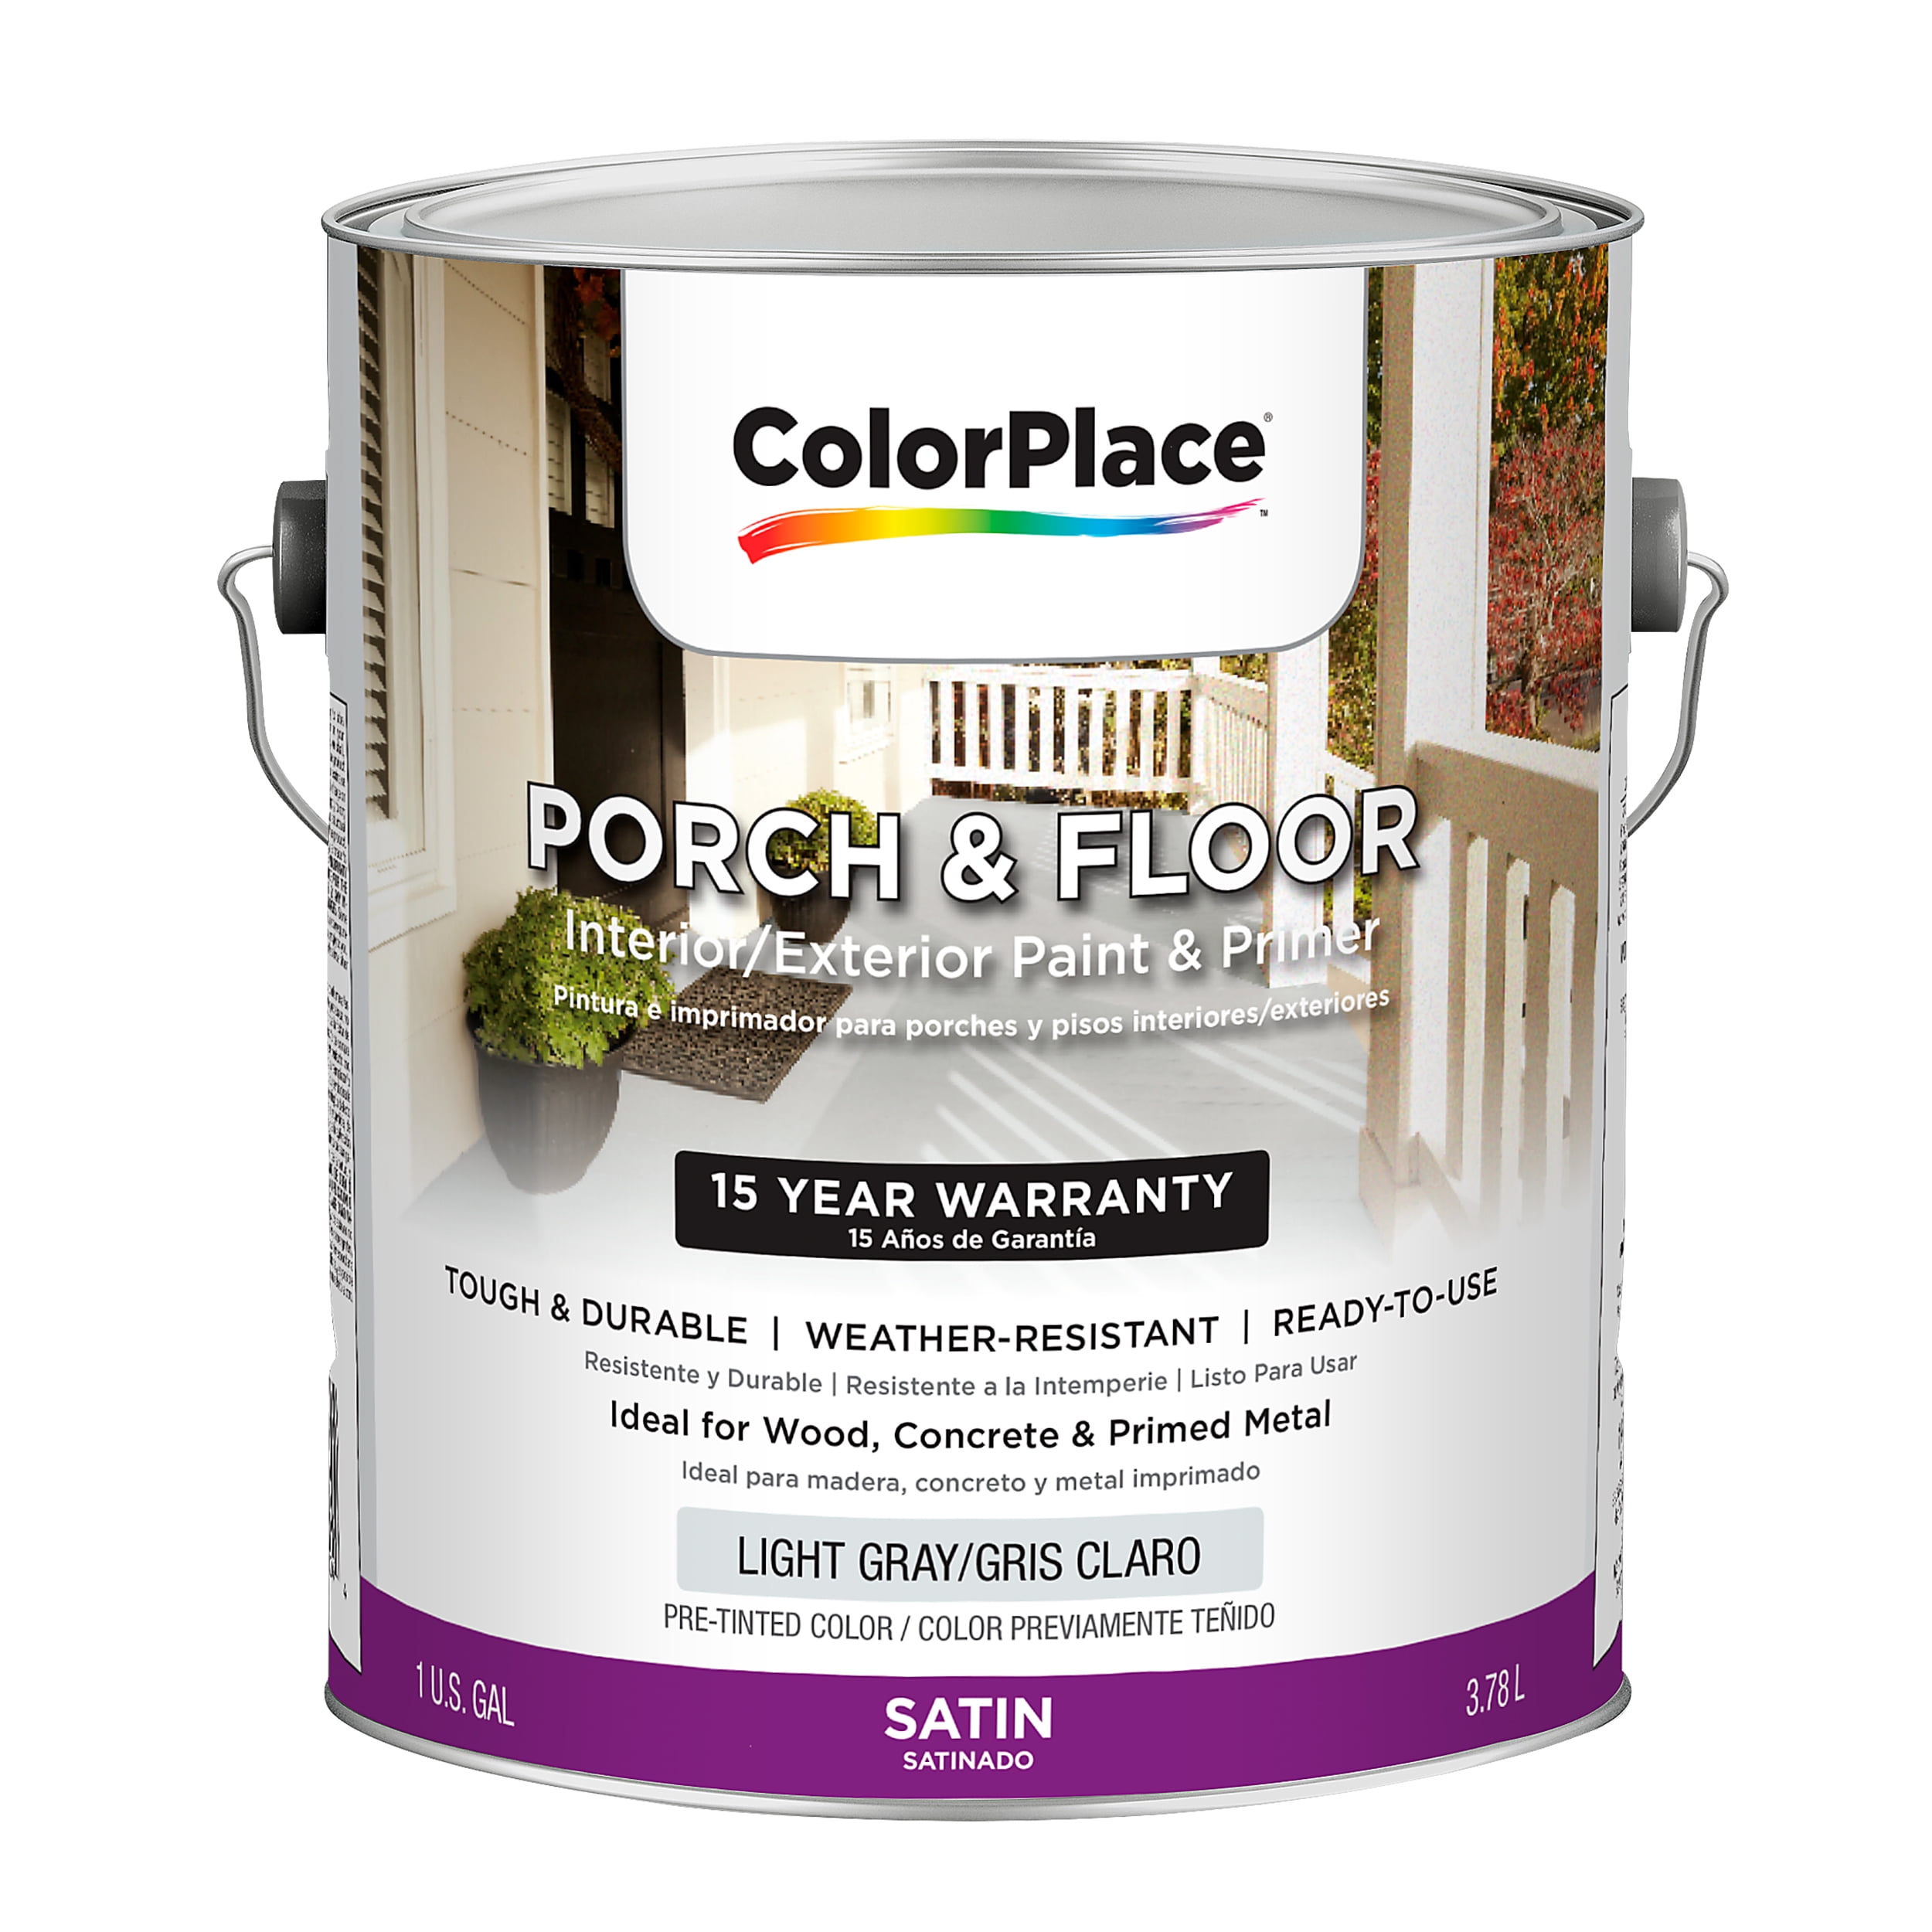 ColorPlace Classic Exterior House Paint, Dapper Tan, Flat, 1 Gallon 